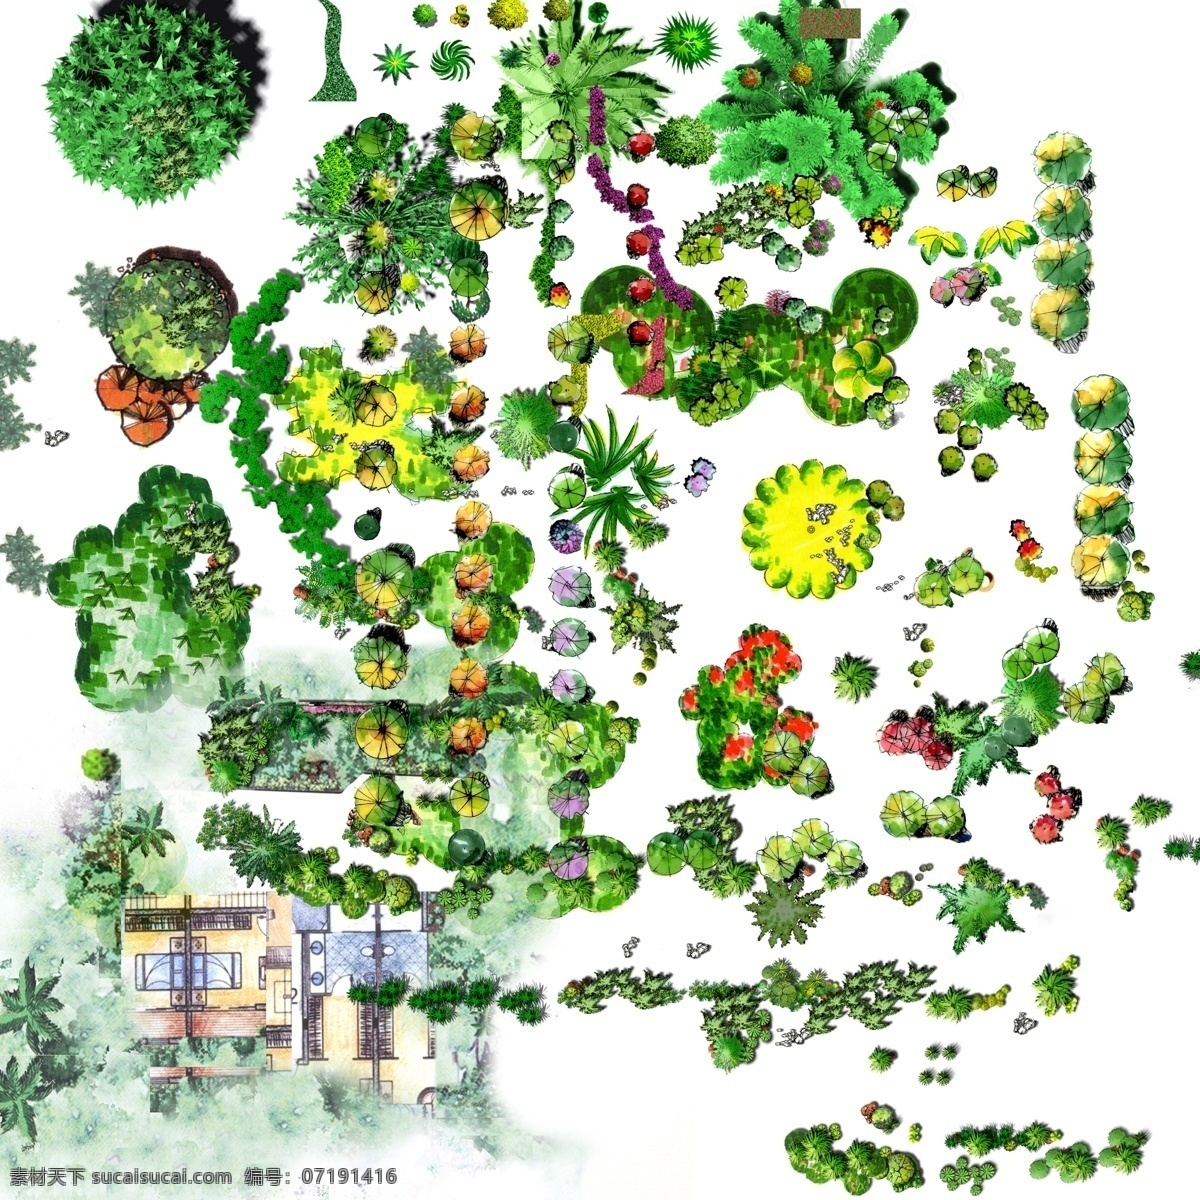 手绘 平面 植物 景观 综合 环境设计 效果图